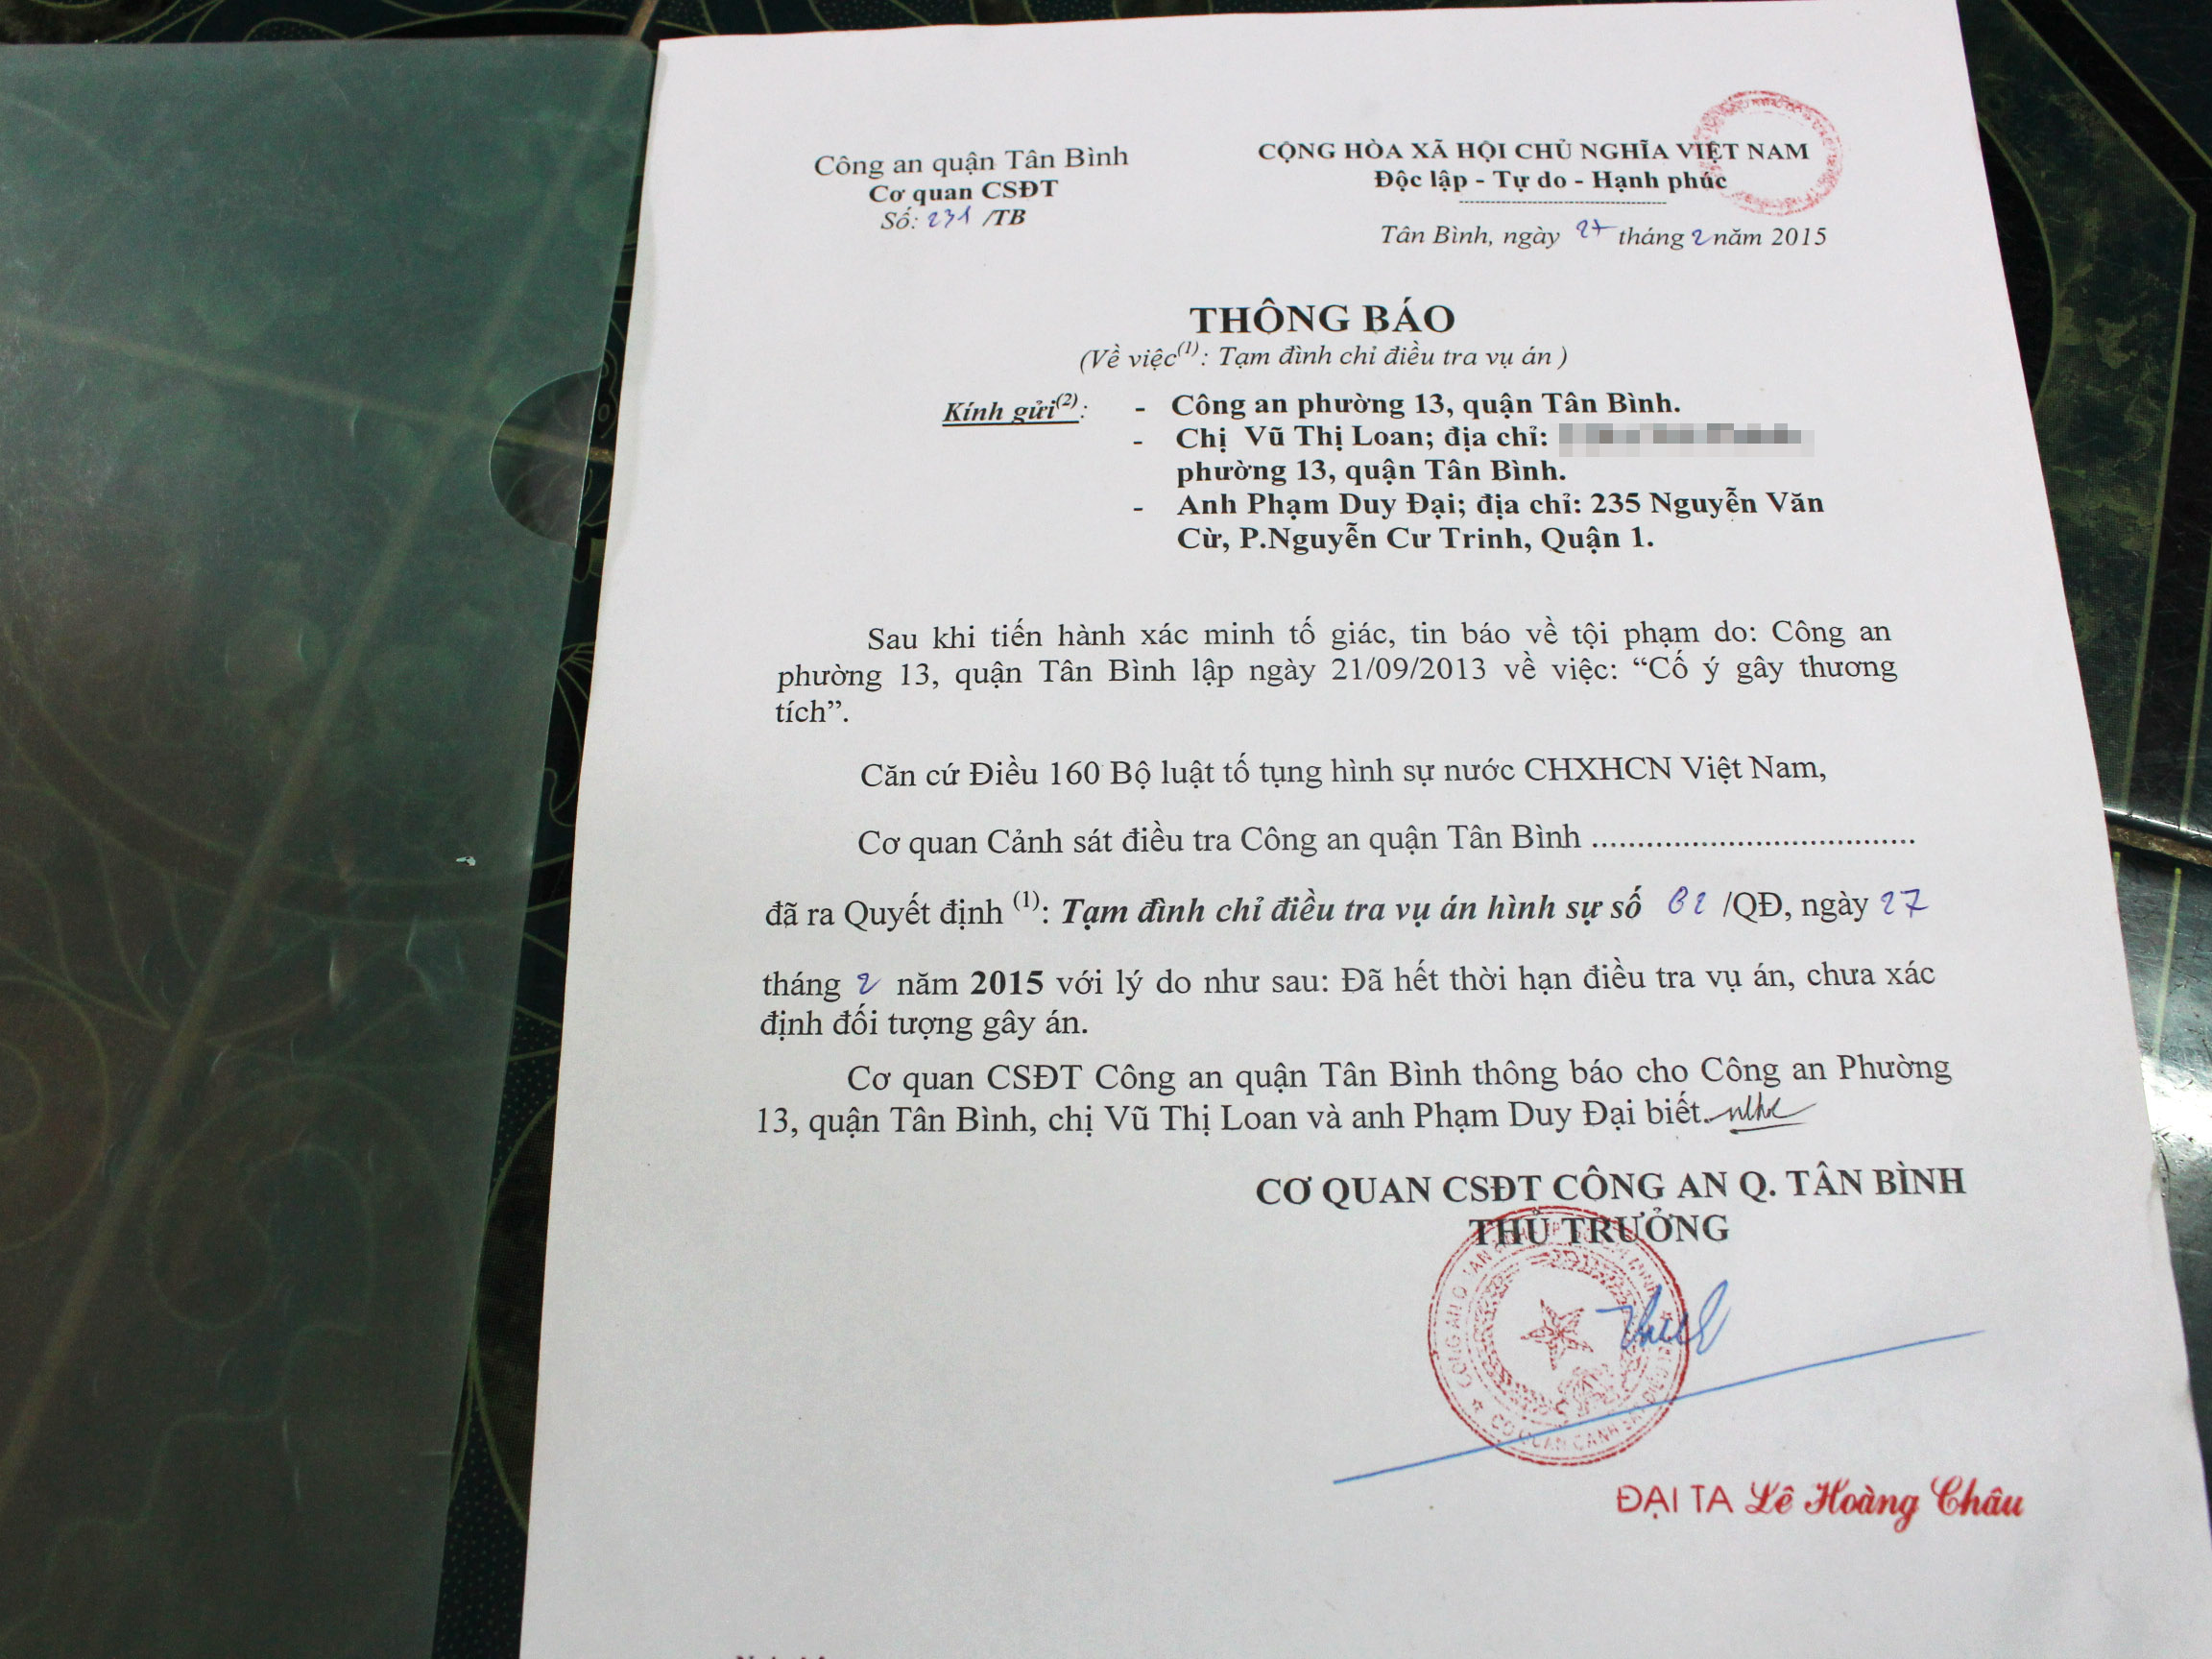 Quyết định đình chỉ điều tra vụ án do Trưởng công an quận Tân Bình ký tháng 2.2015 nhưng tháng 7.2016 chị Loan mới nhận được